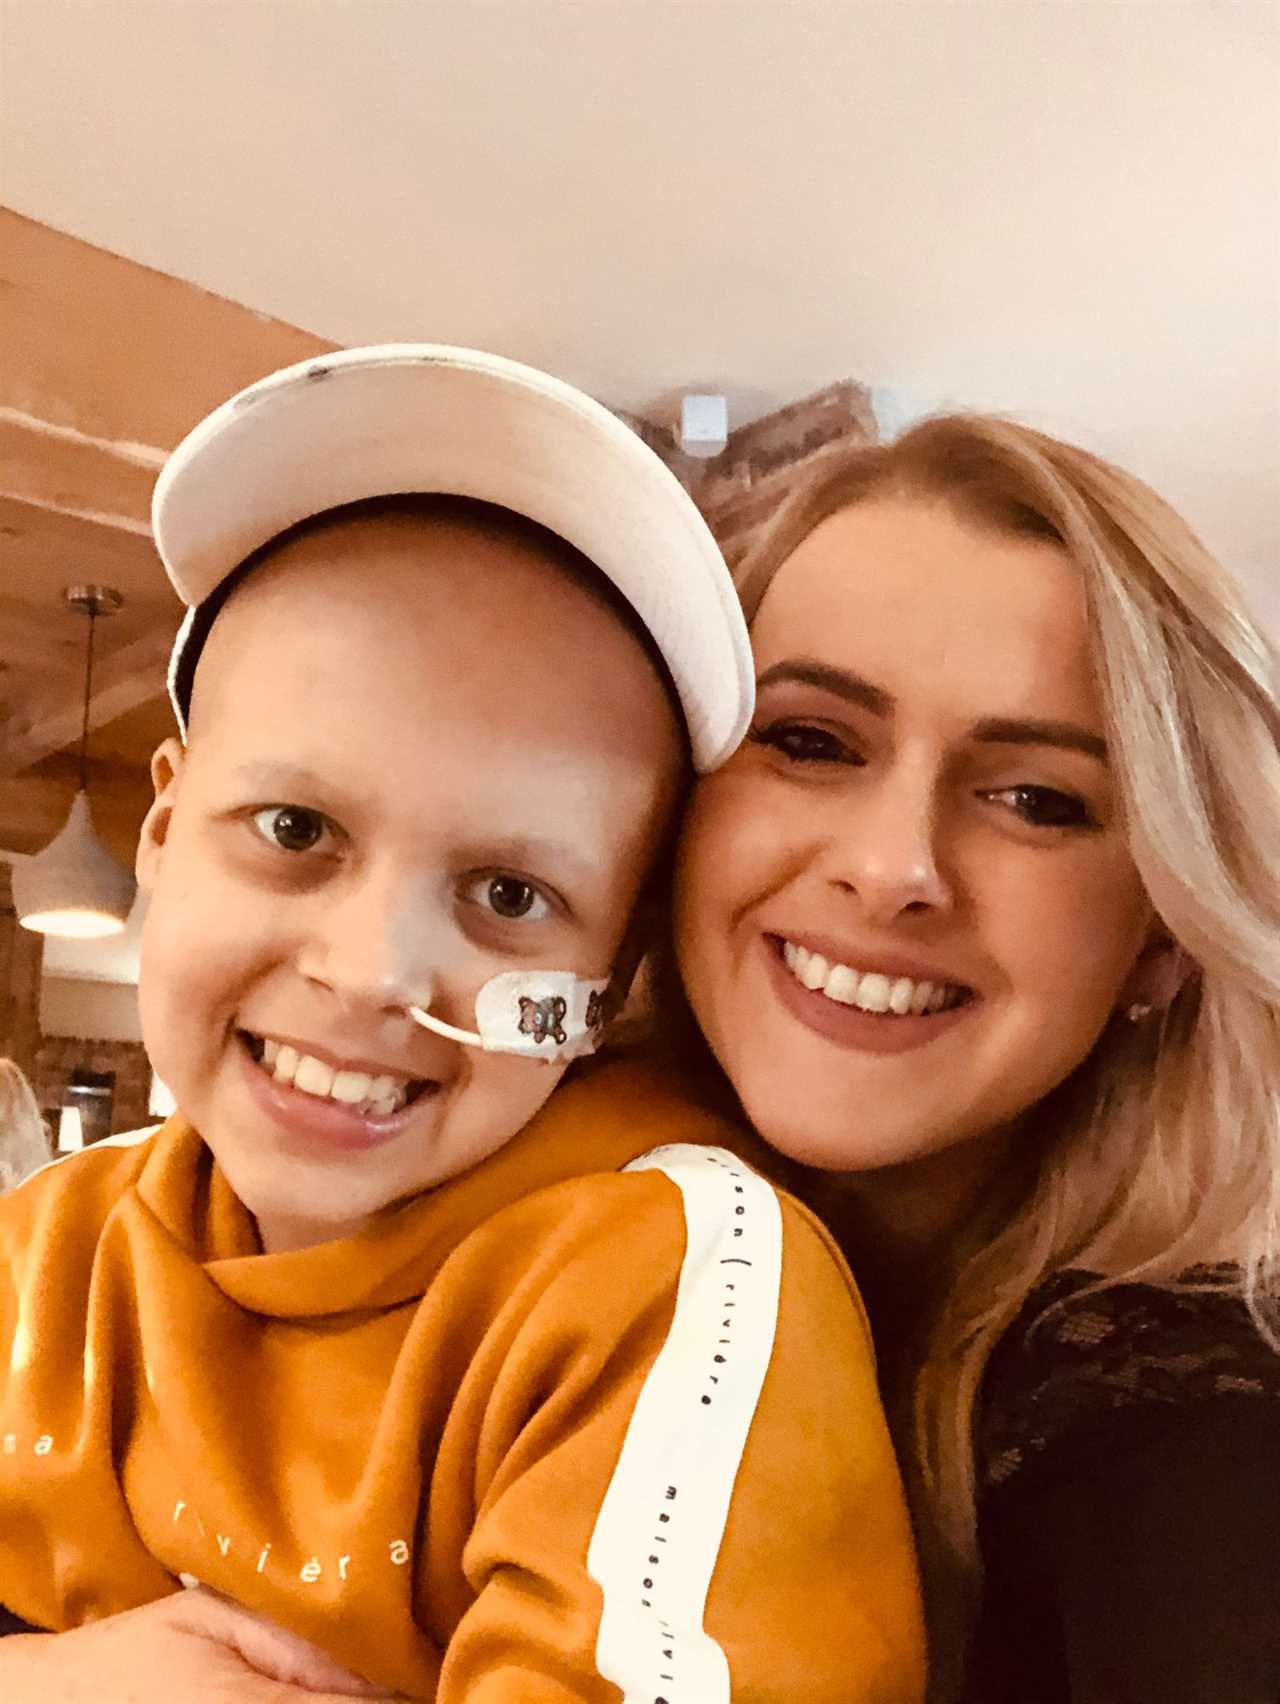 Brave brain cancer survivor Alfie, 12, enters our Xmas Cards For Kids campaign